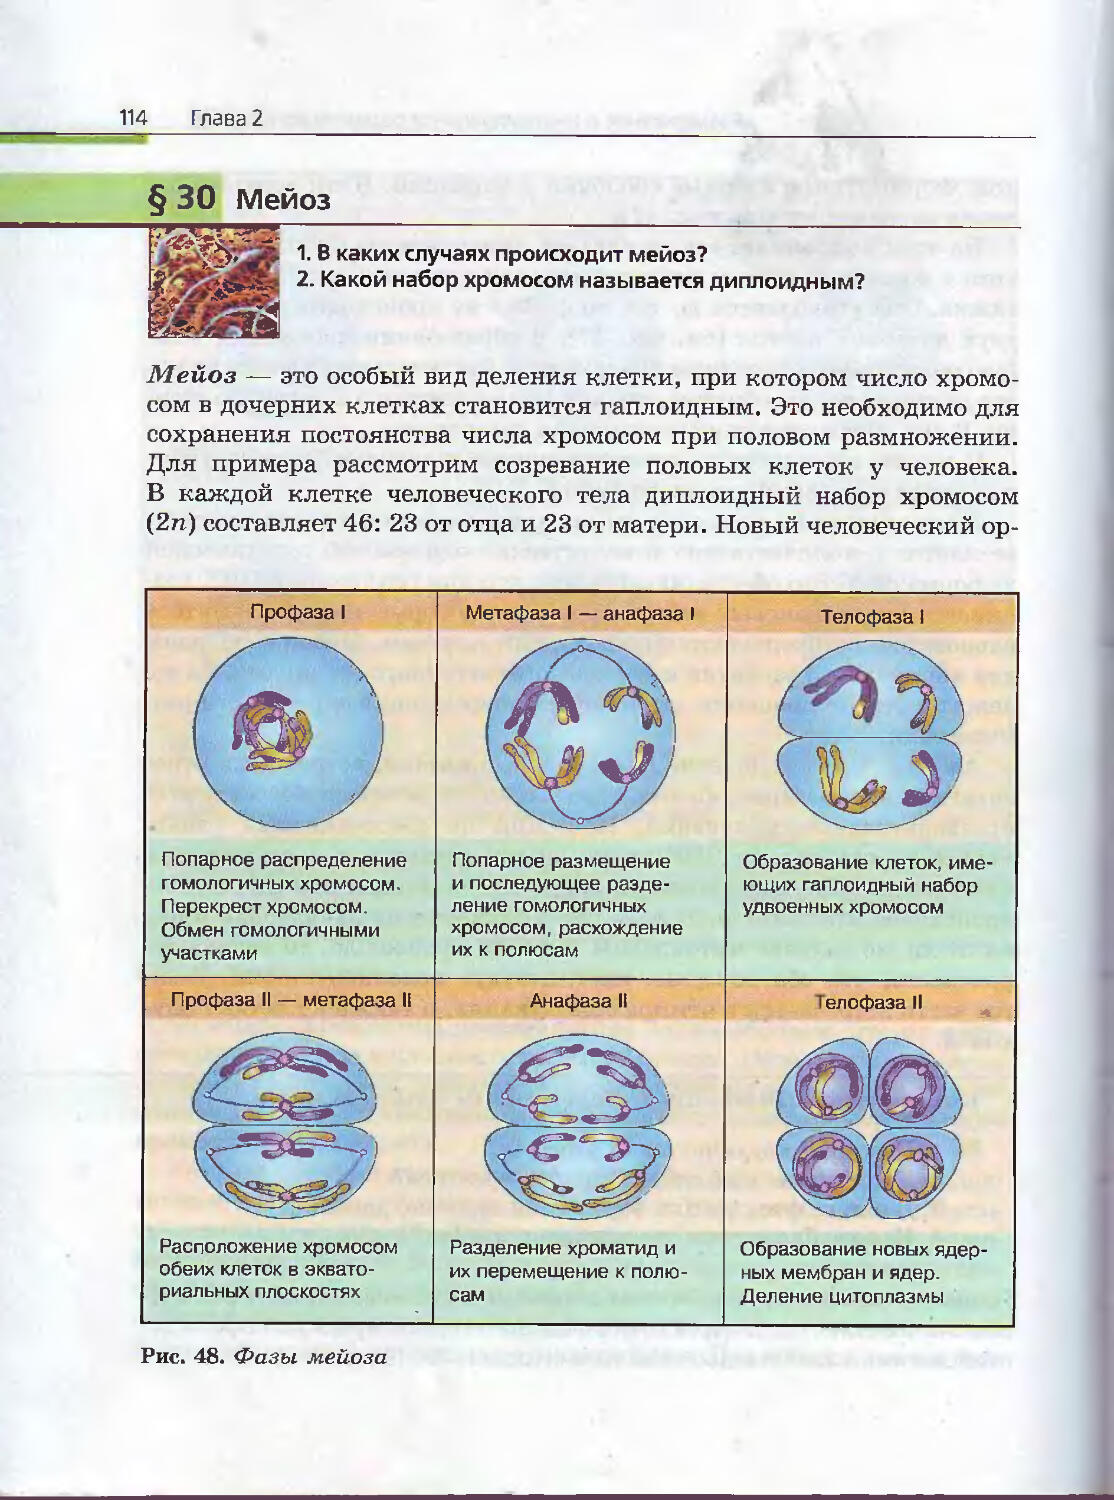 Учебник биологии 10 класс пасечник каменский